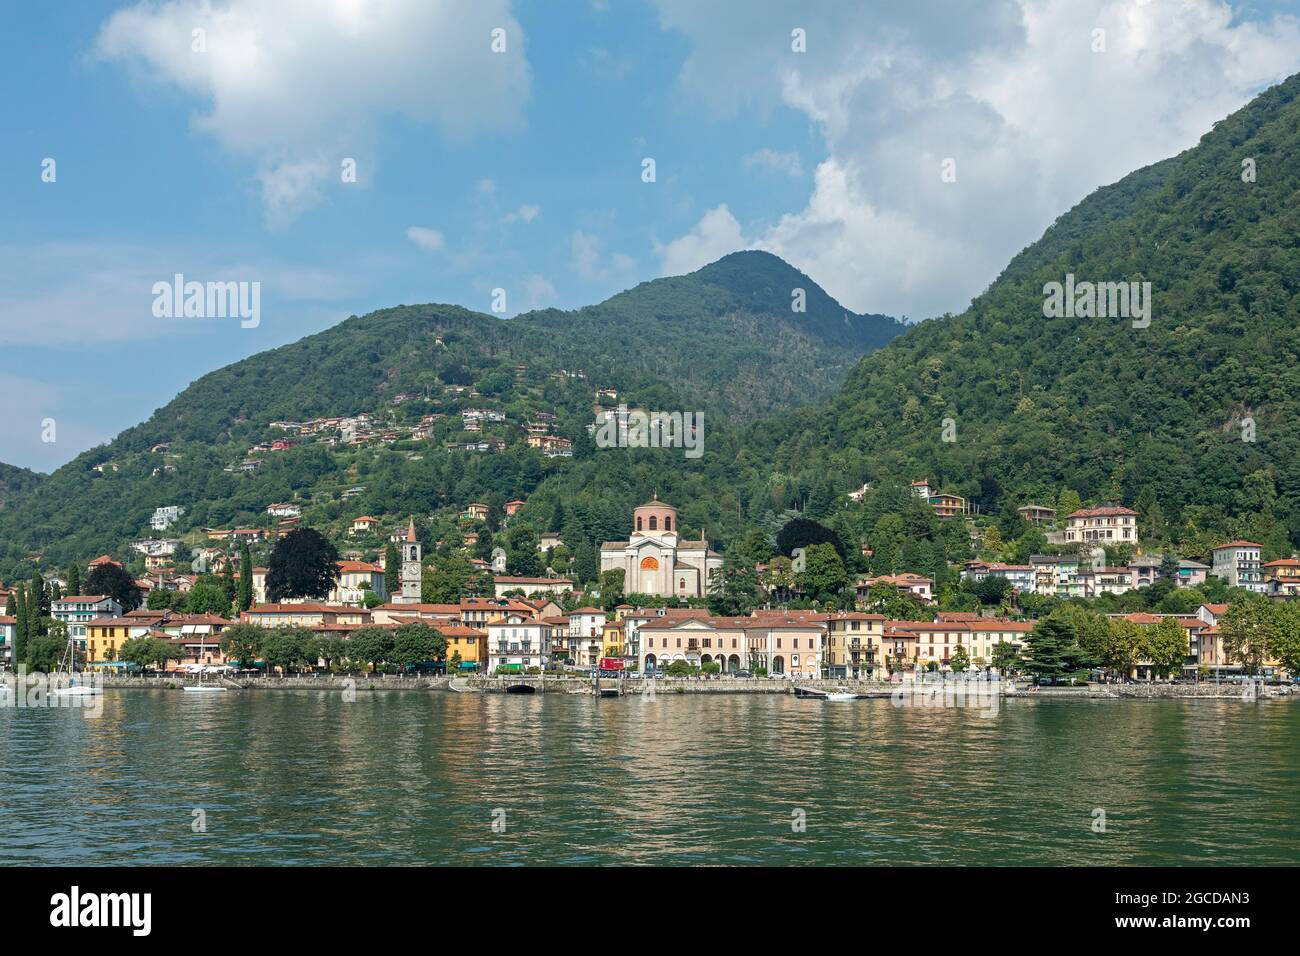 view of the town, Laveno-Mombello, Lake Maggiore, Lombardy, Italy Stock Photo